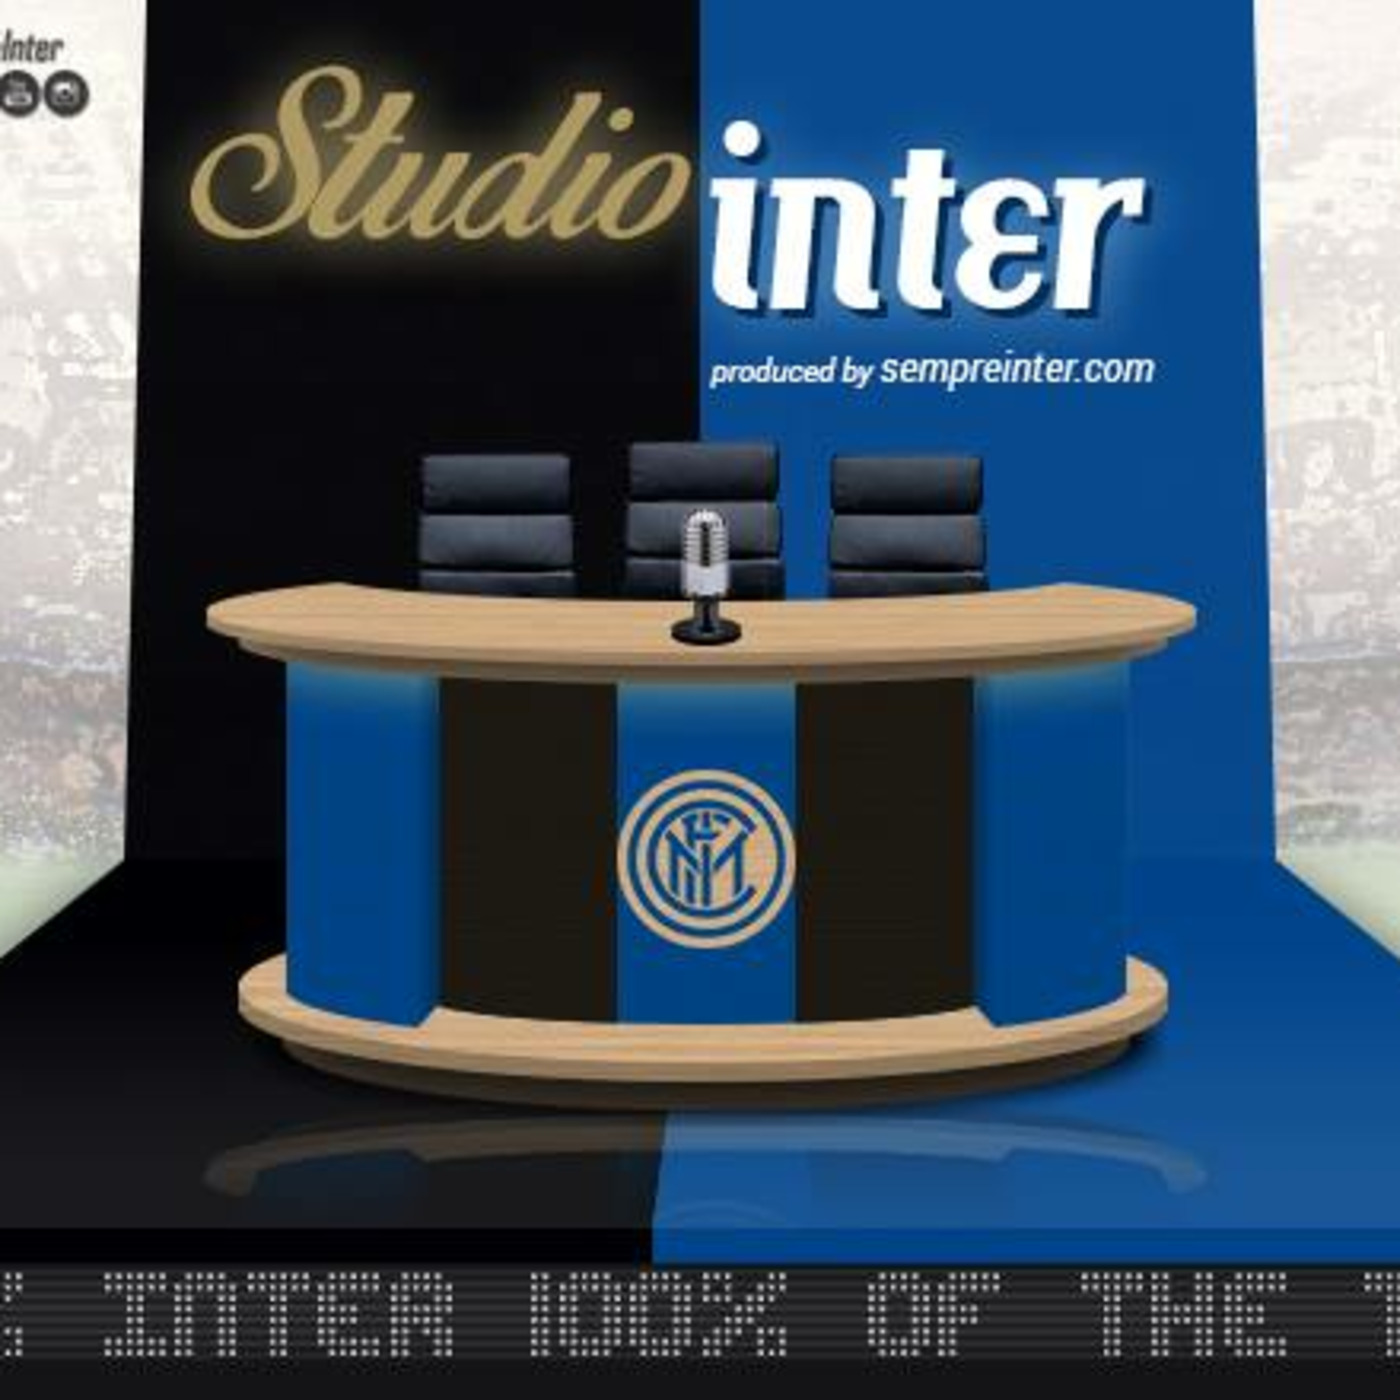 StudioInter Episode 73: ”No win vs Roma = No Champions League for Inter”